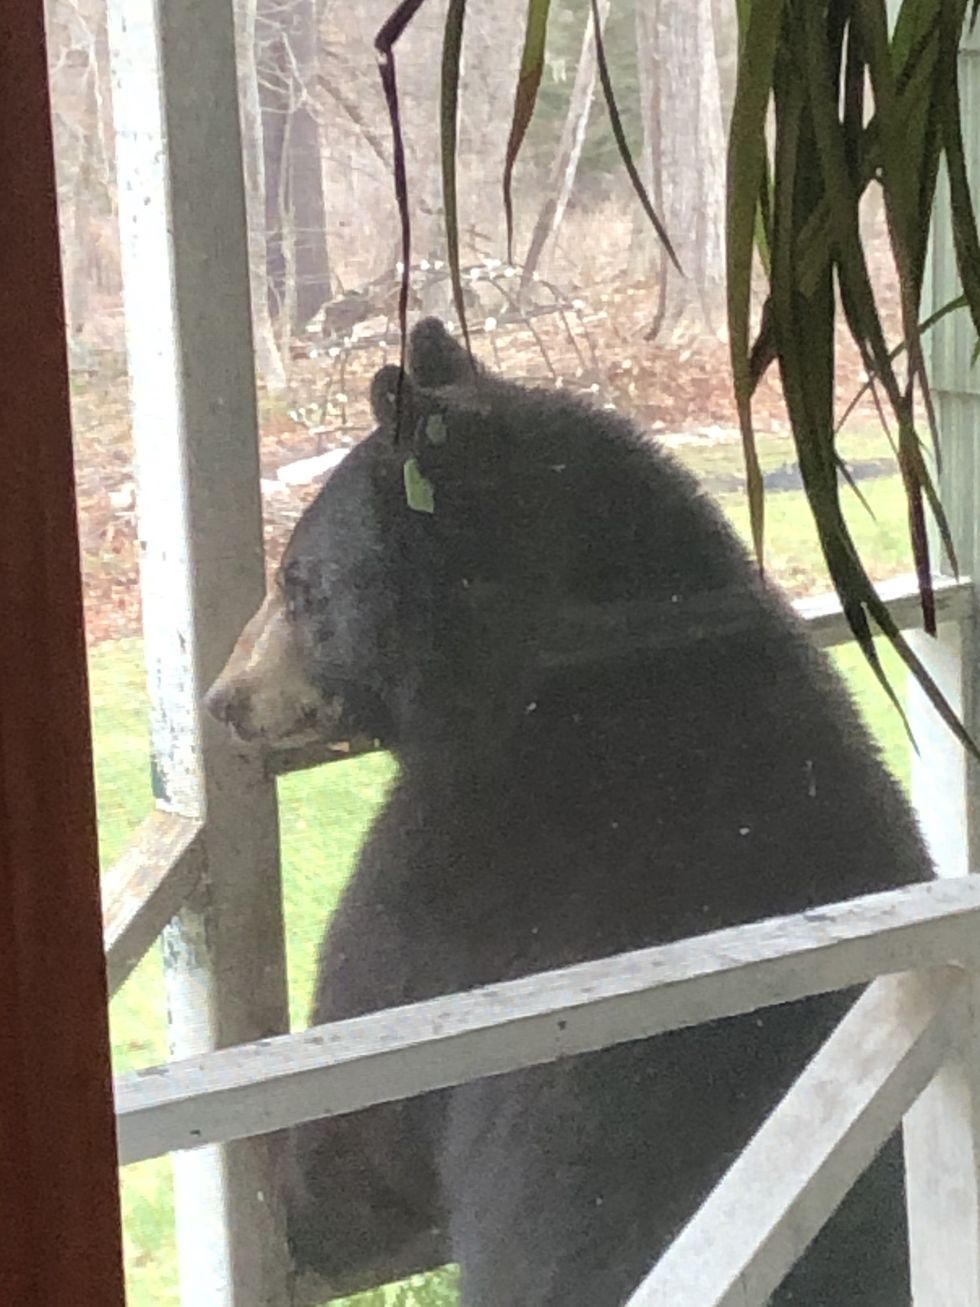 Bear scare in Falls Village